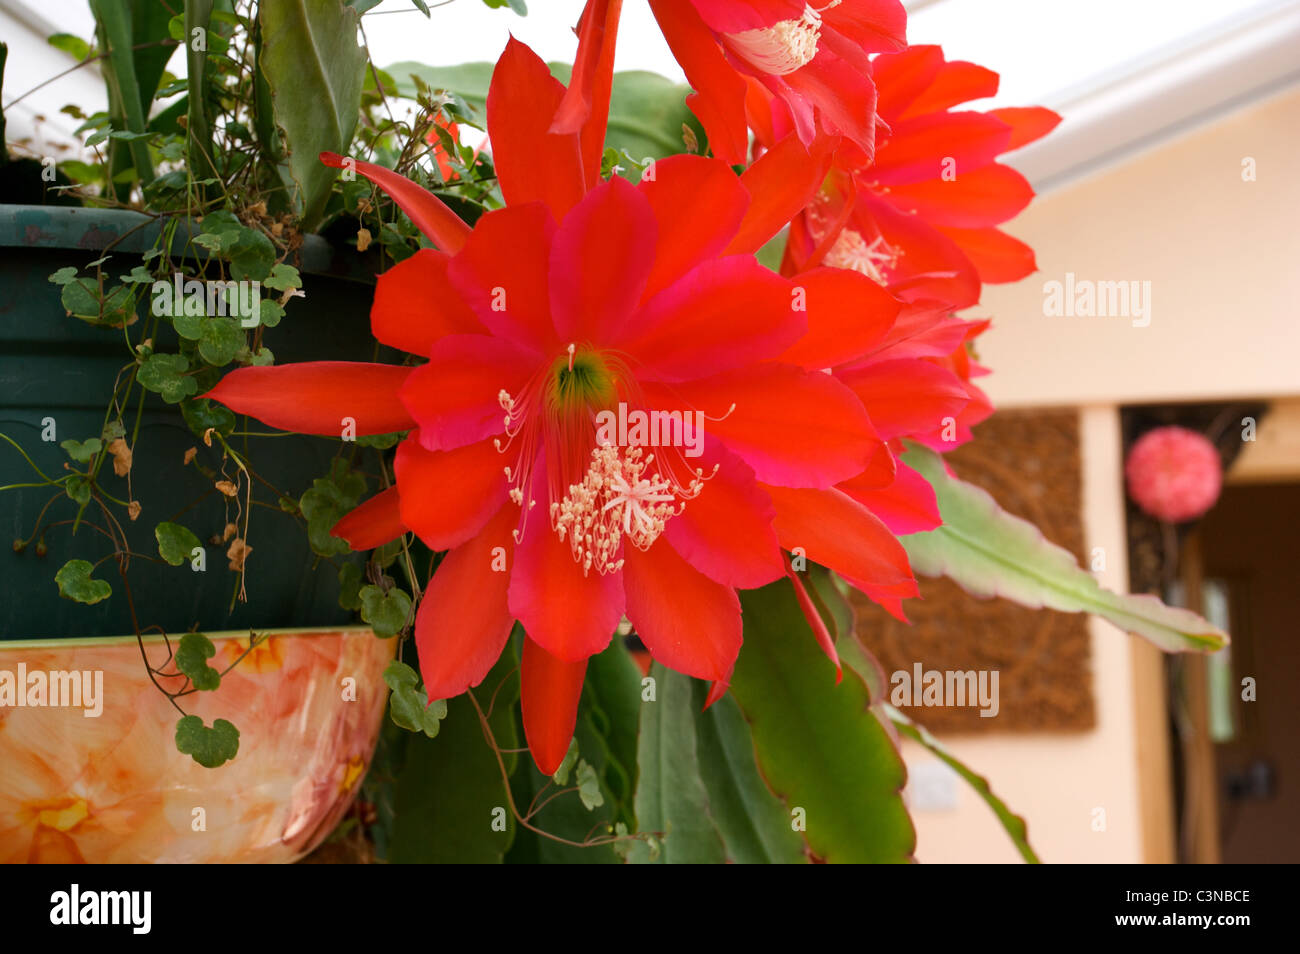 Epiphyllum 'Slightly Sassy' red cactus flowers, Stock Photo